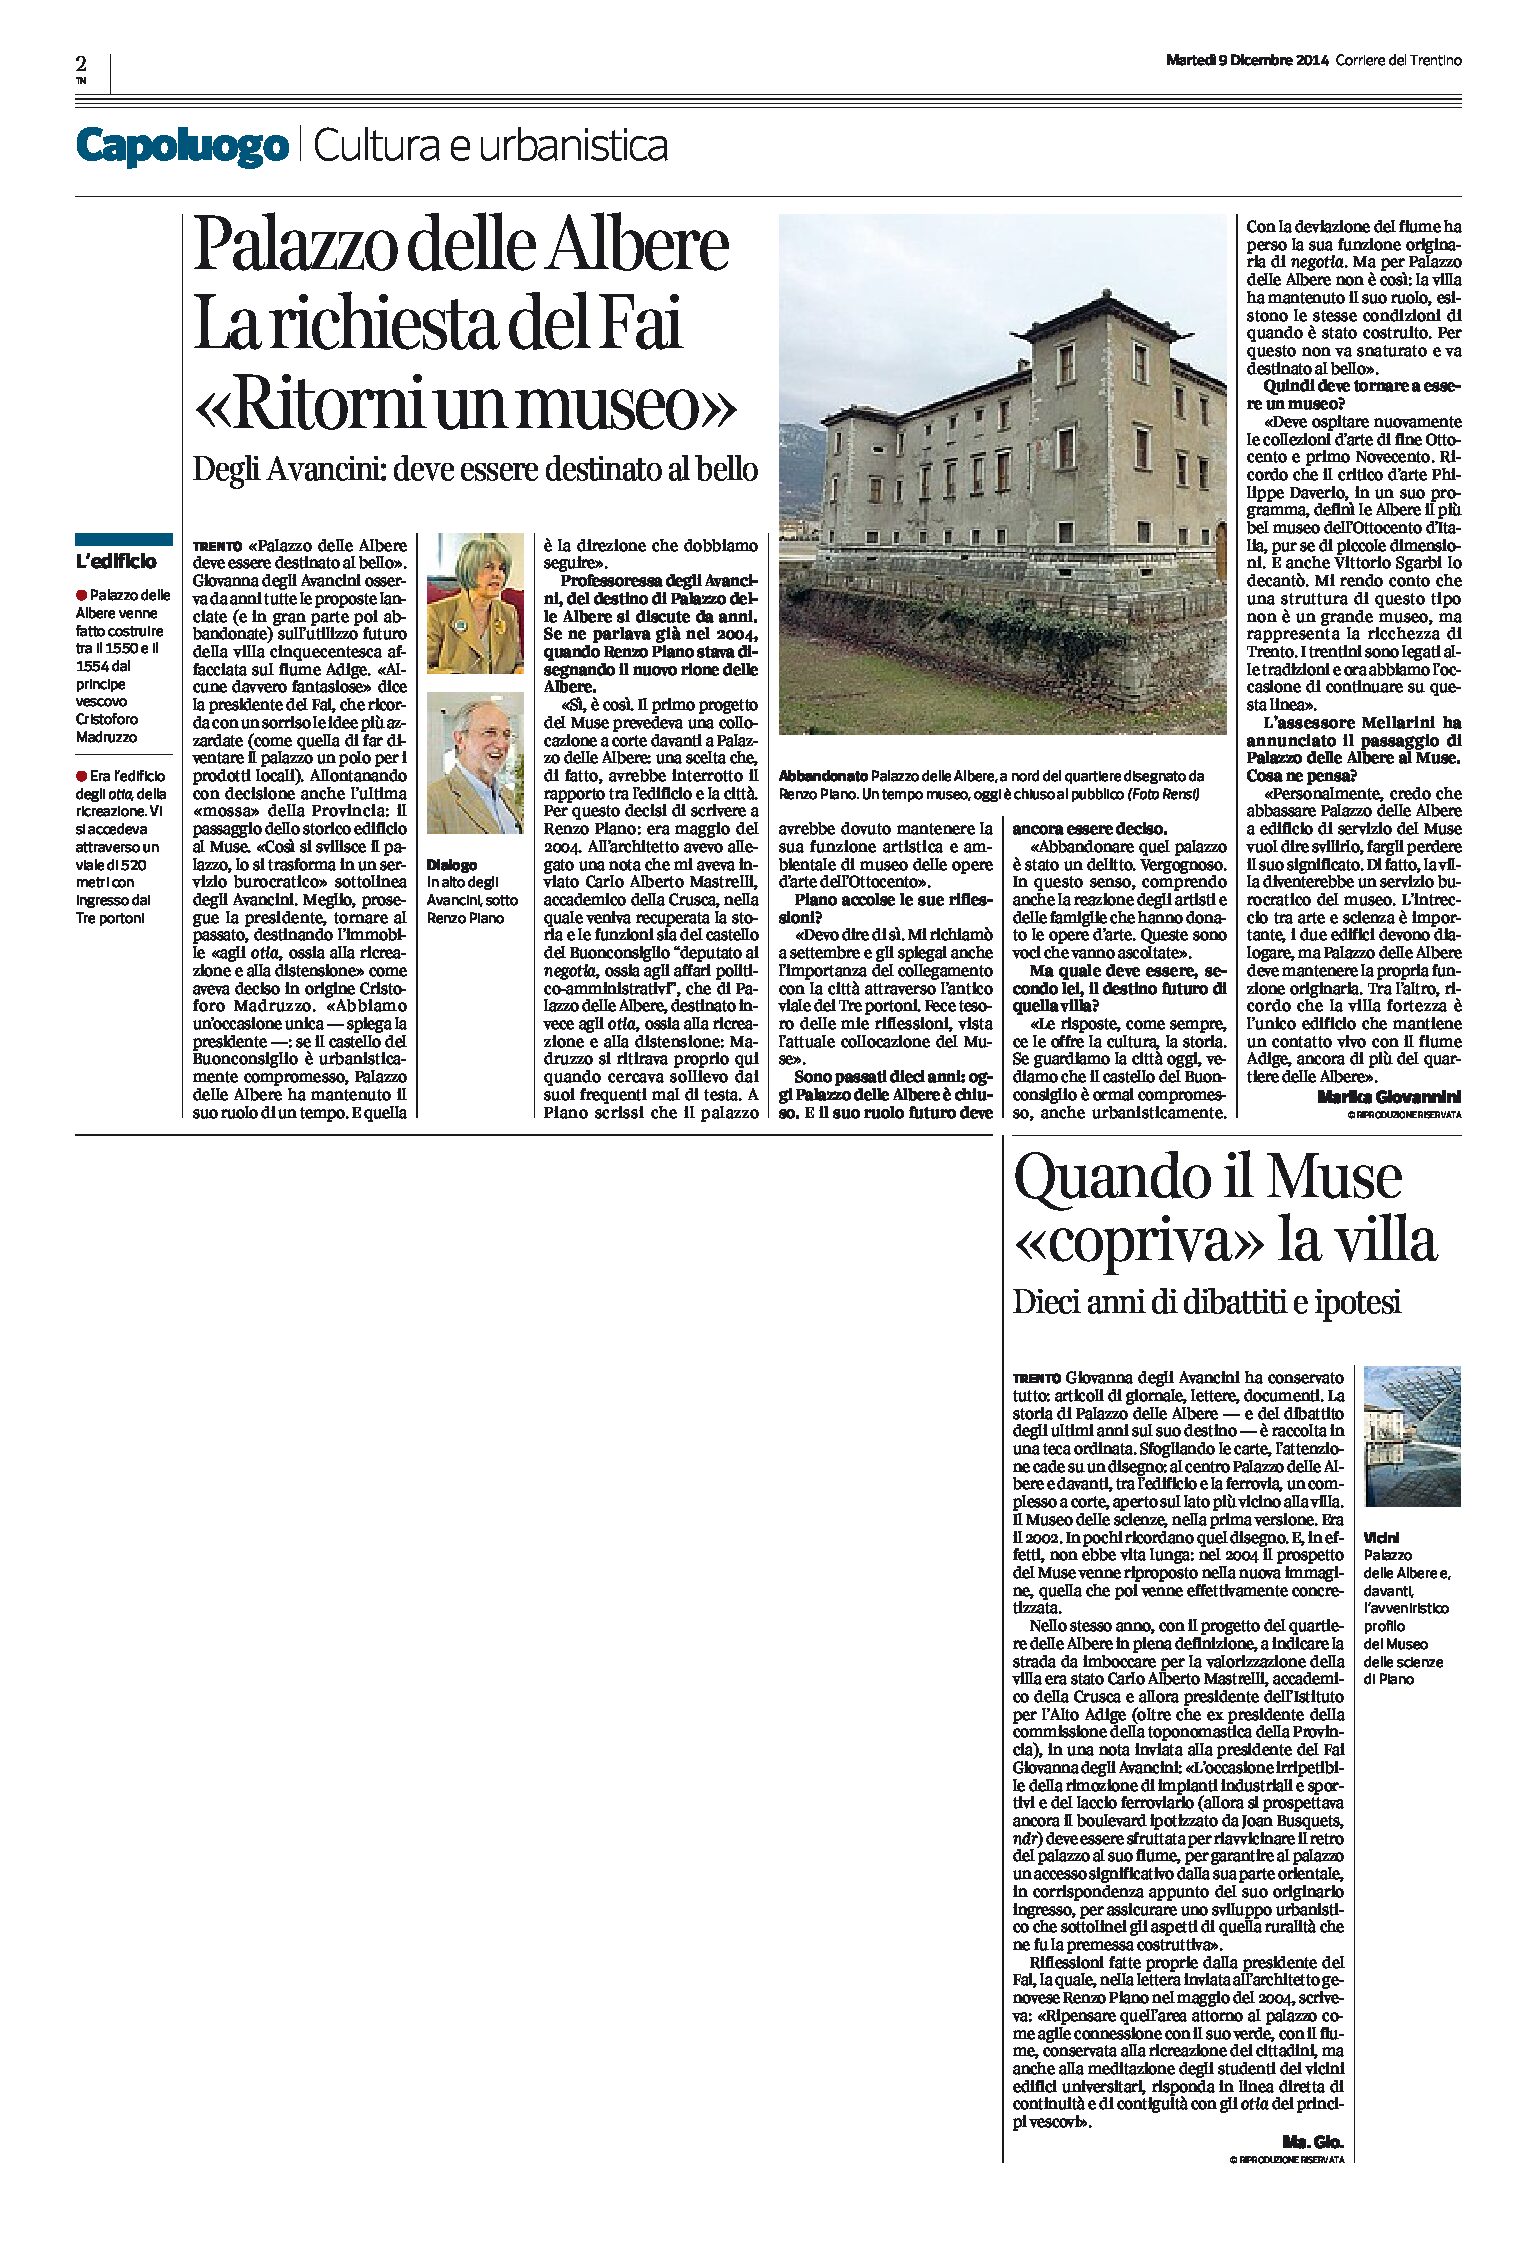 Trento, Palazzo delle Albere: la richiesta del Fai “ritorni un museo”